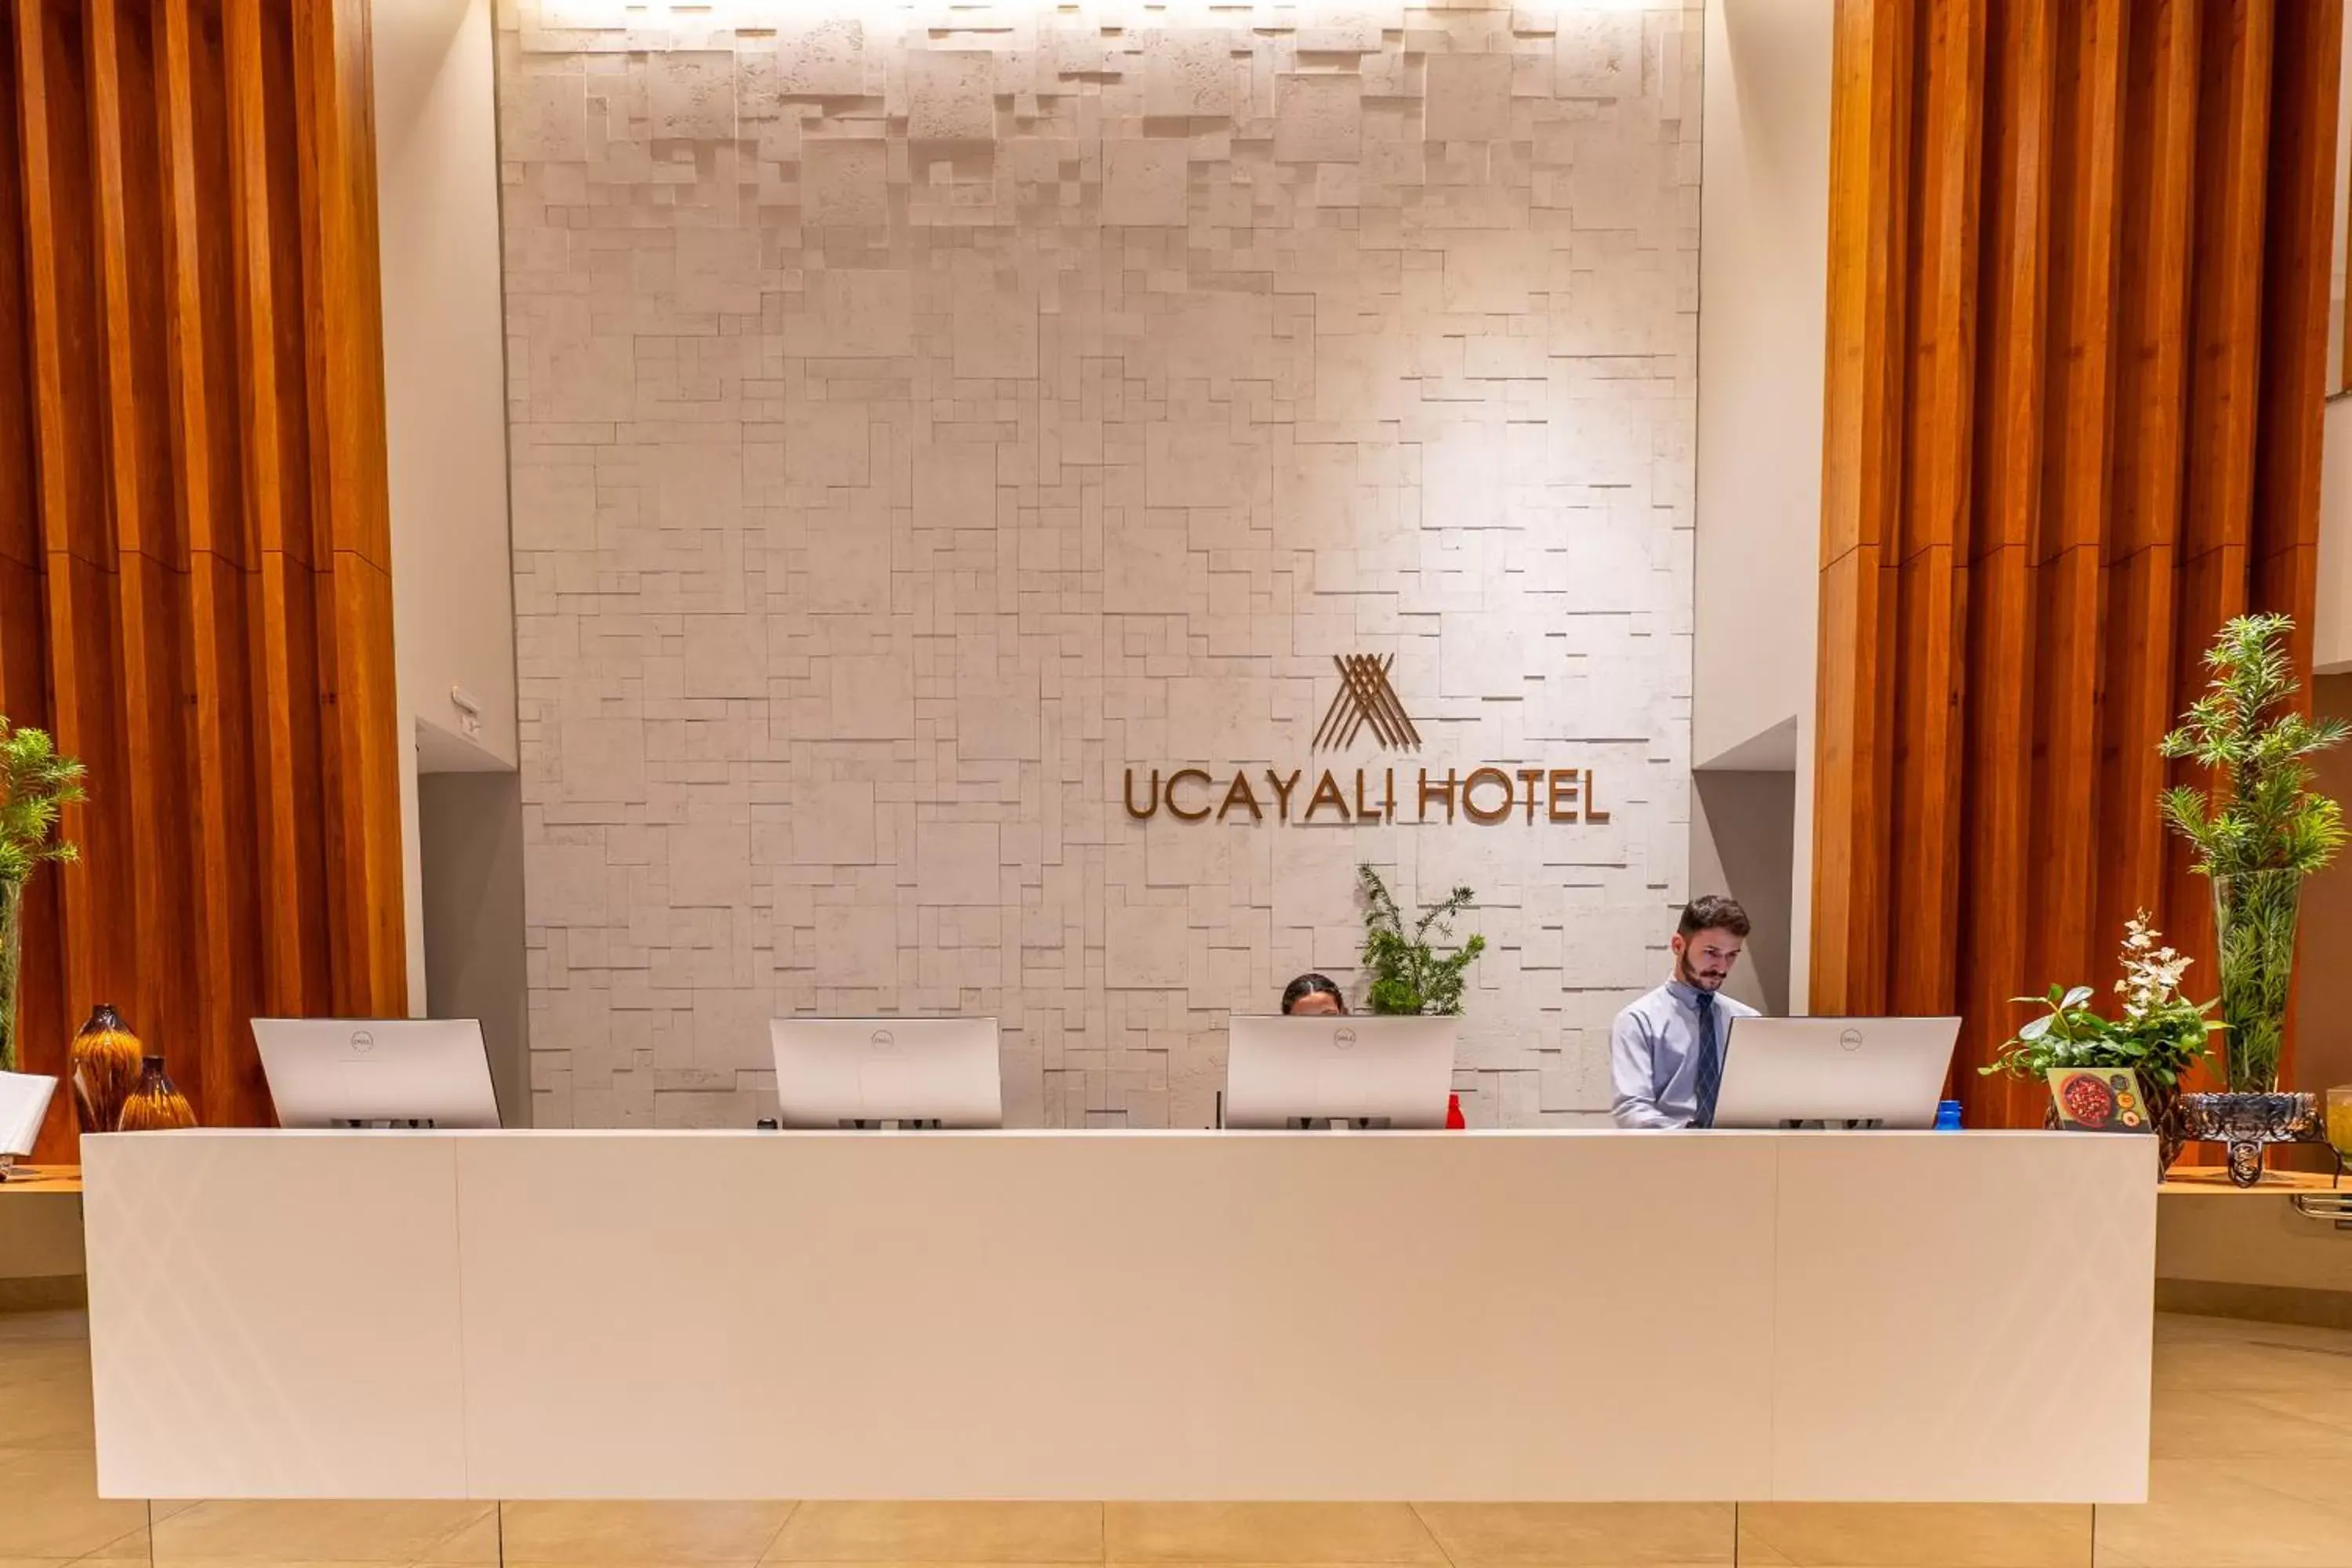 Lobby or reception, Lobby/Reception in Ucayali Hotel